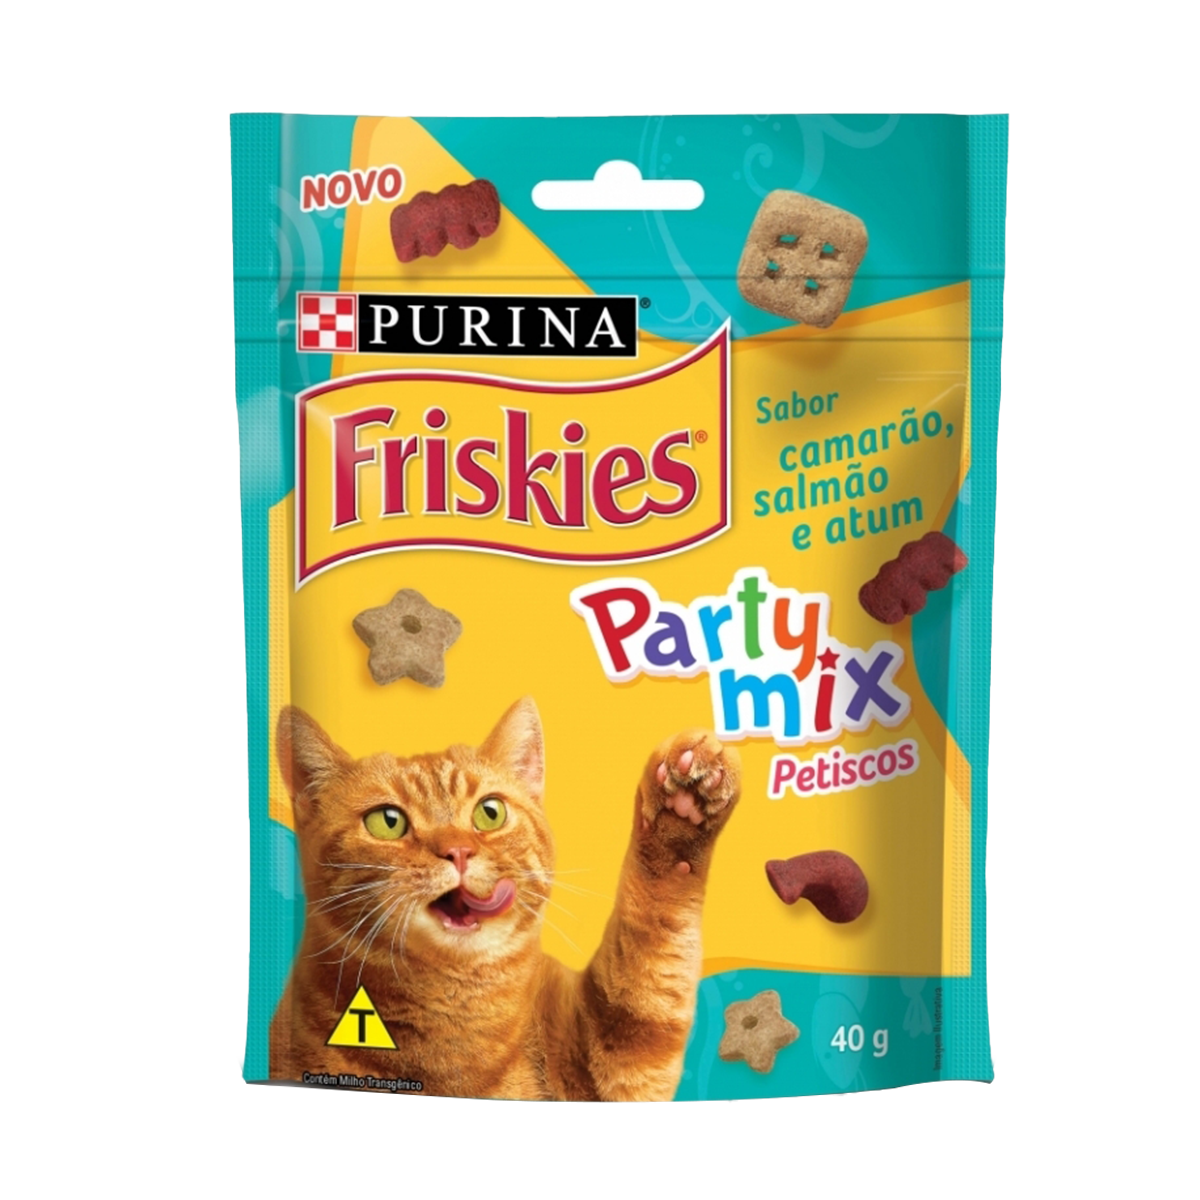 Purina-Friskies-snacks-camarao-salmao-e-atum.png